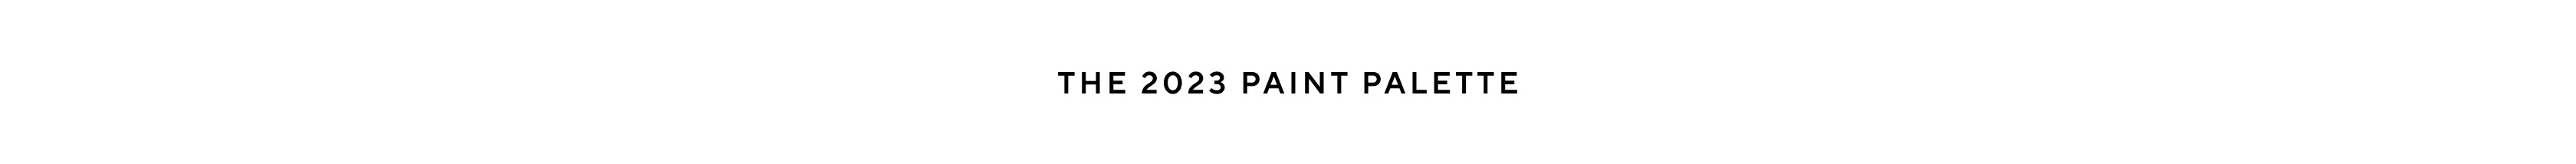 The 2023 Paint Palette